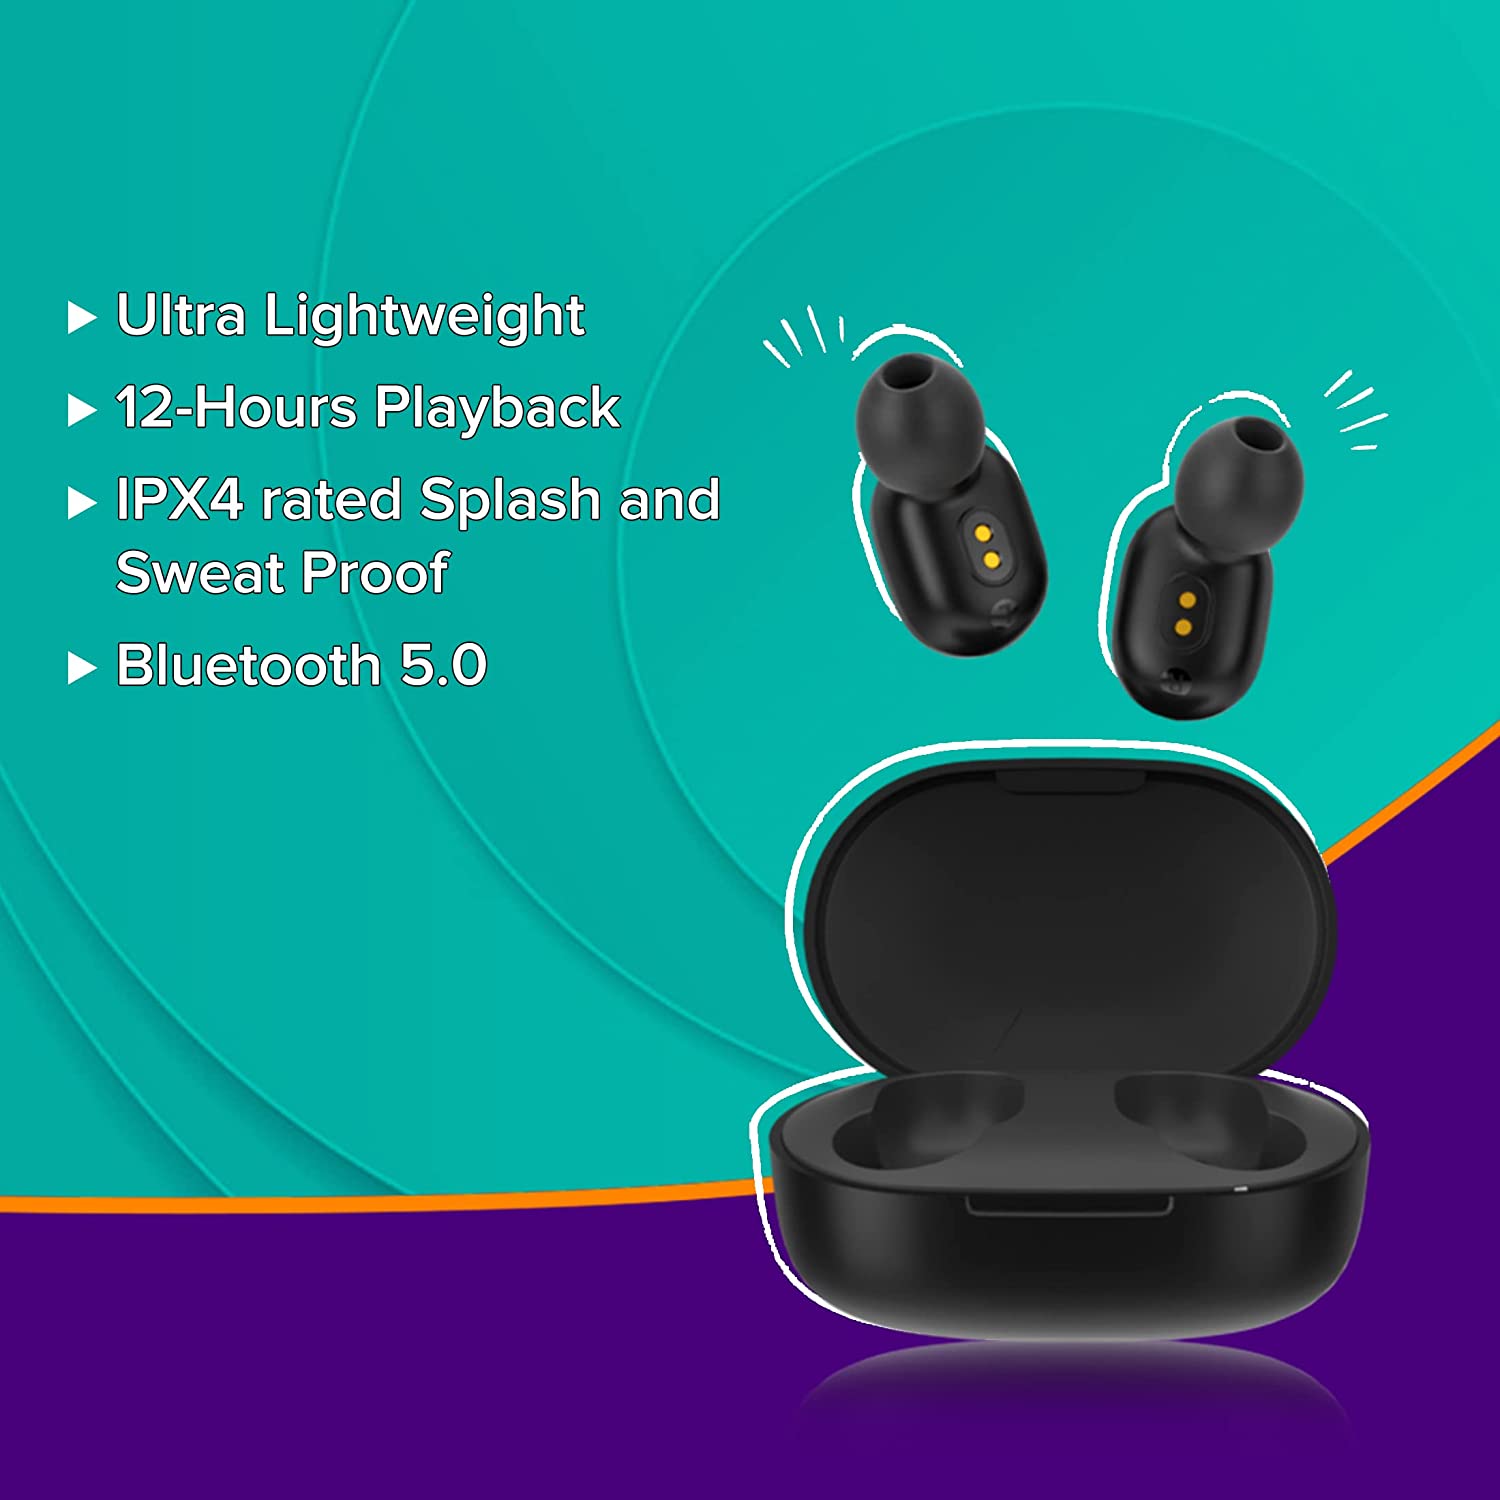 Amazon Earbuds offer: चिल्ड्रेंस डे के लिए सबसे सस्ता और अच्छा गिफ्ट, pTron के 2500 के ईयरबड्स सिर्फ 799 रुपये में खरीदें